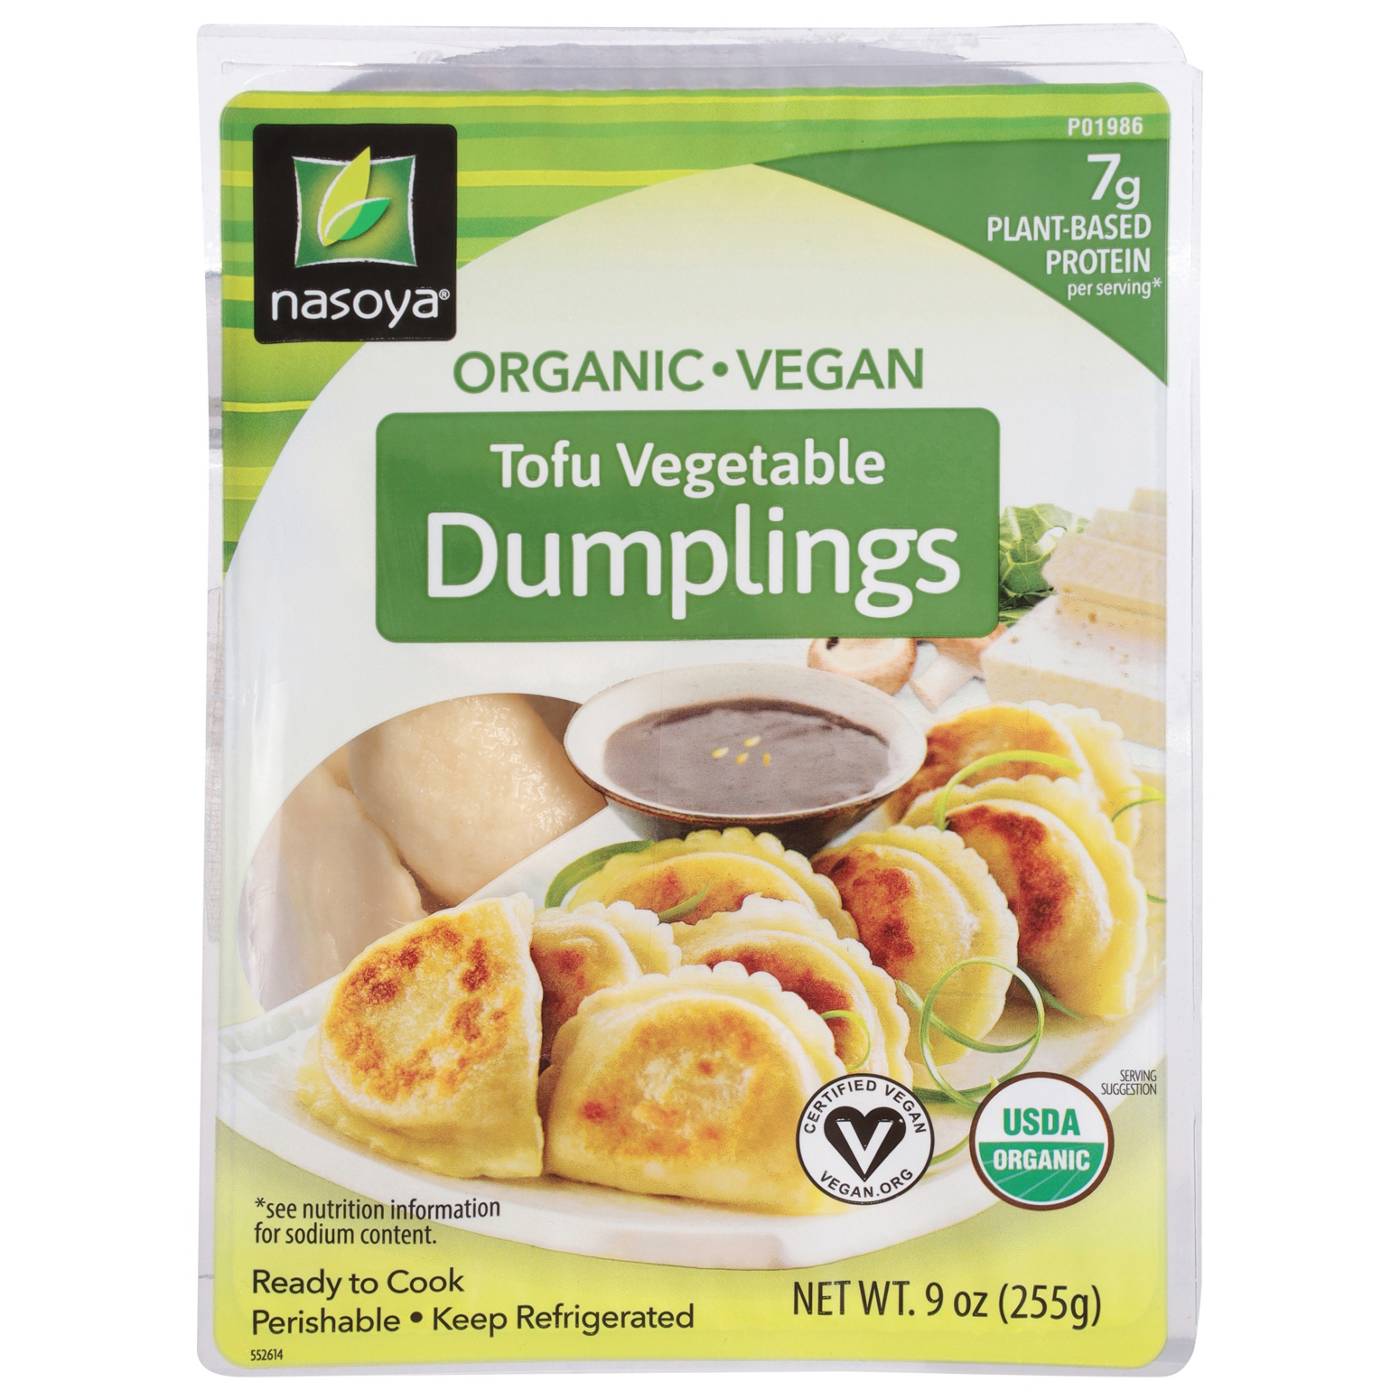 Nasoya Organic Vegan Tofu Vegetable Dumplings; image 1 of 2